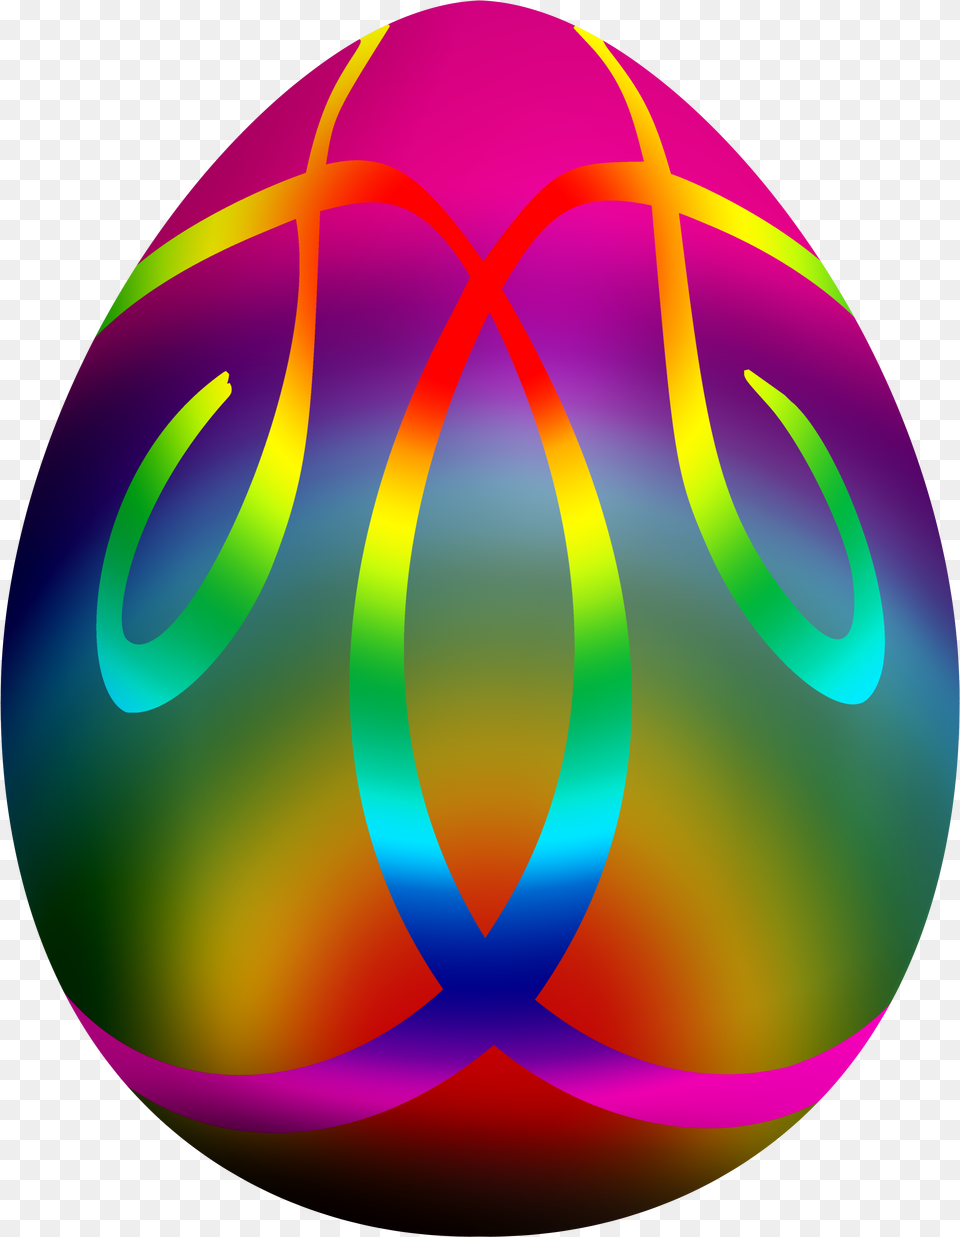 Colorful Easter Egg Clip Art Easter Egg, Easter Egg, Food Free Transparent Png